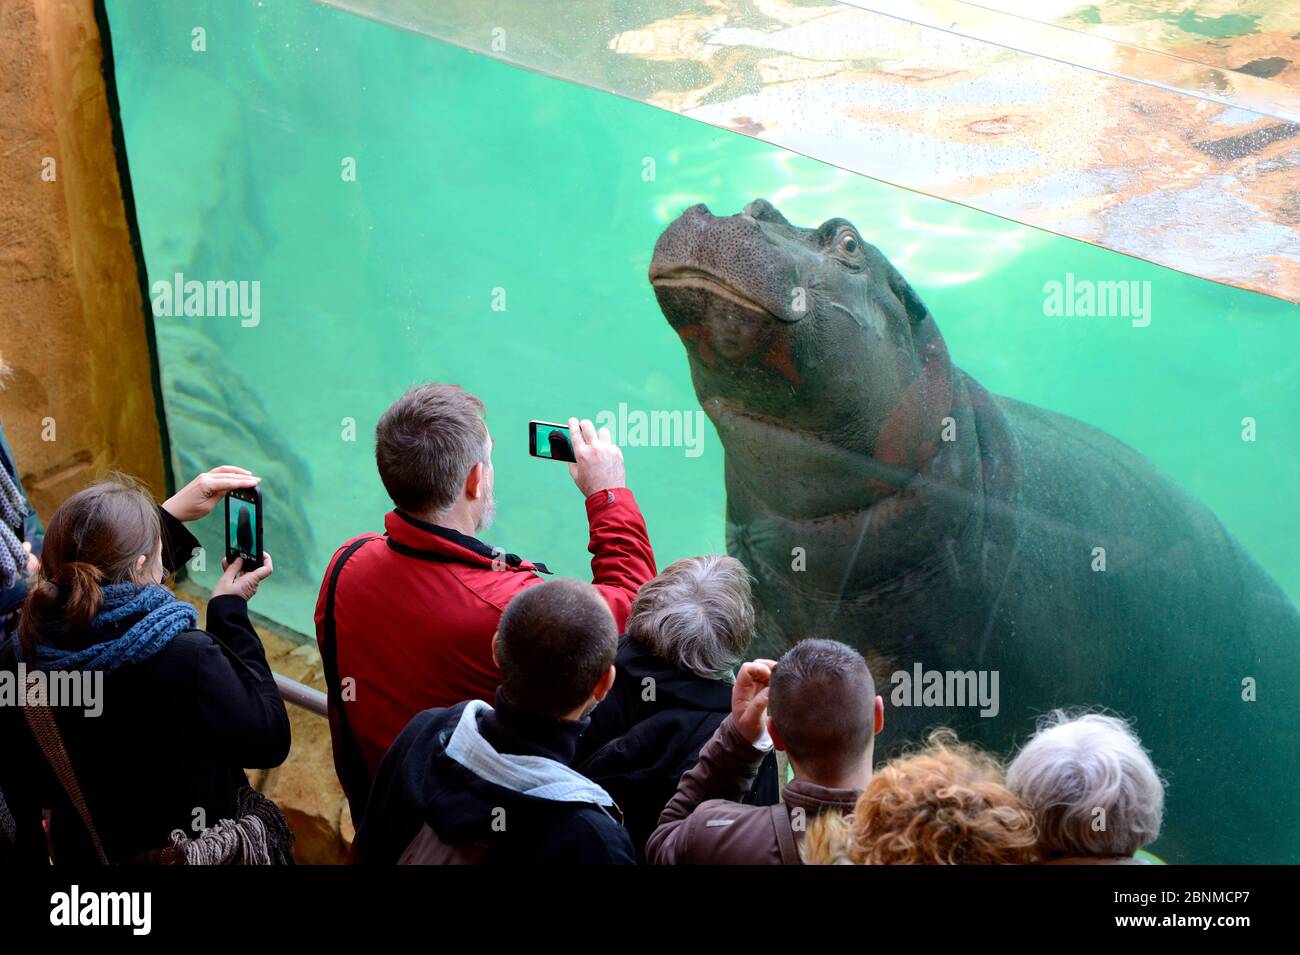 Visitantes mirando a una hembra Hippopotamus (Hippopotamus amphibius) a través de una ventana de tanque, cautiva en el Zoo Parc de Beauval, Francia. Ocurre en el sub-Sahara Foto de stock